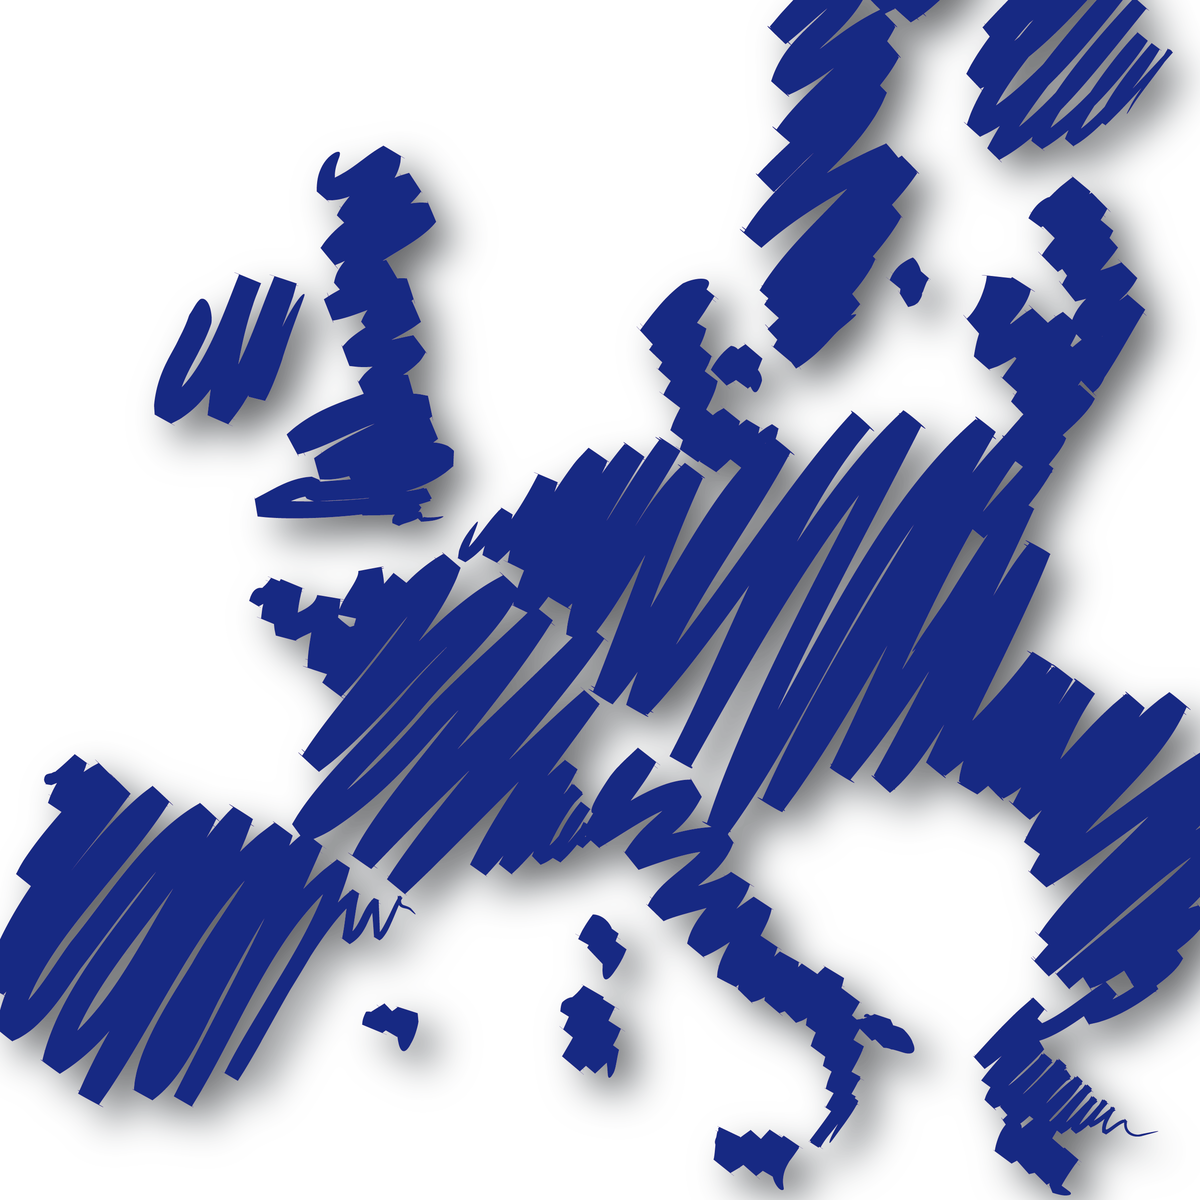 Understandingeurope_logocarre1200